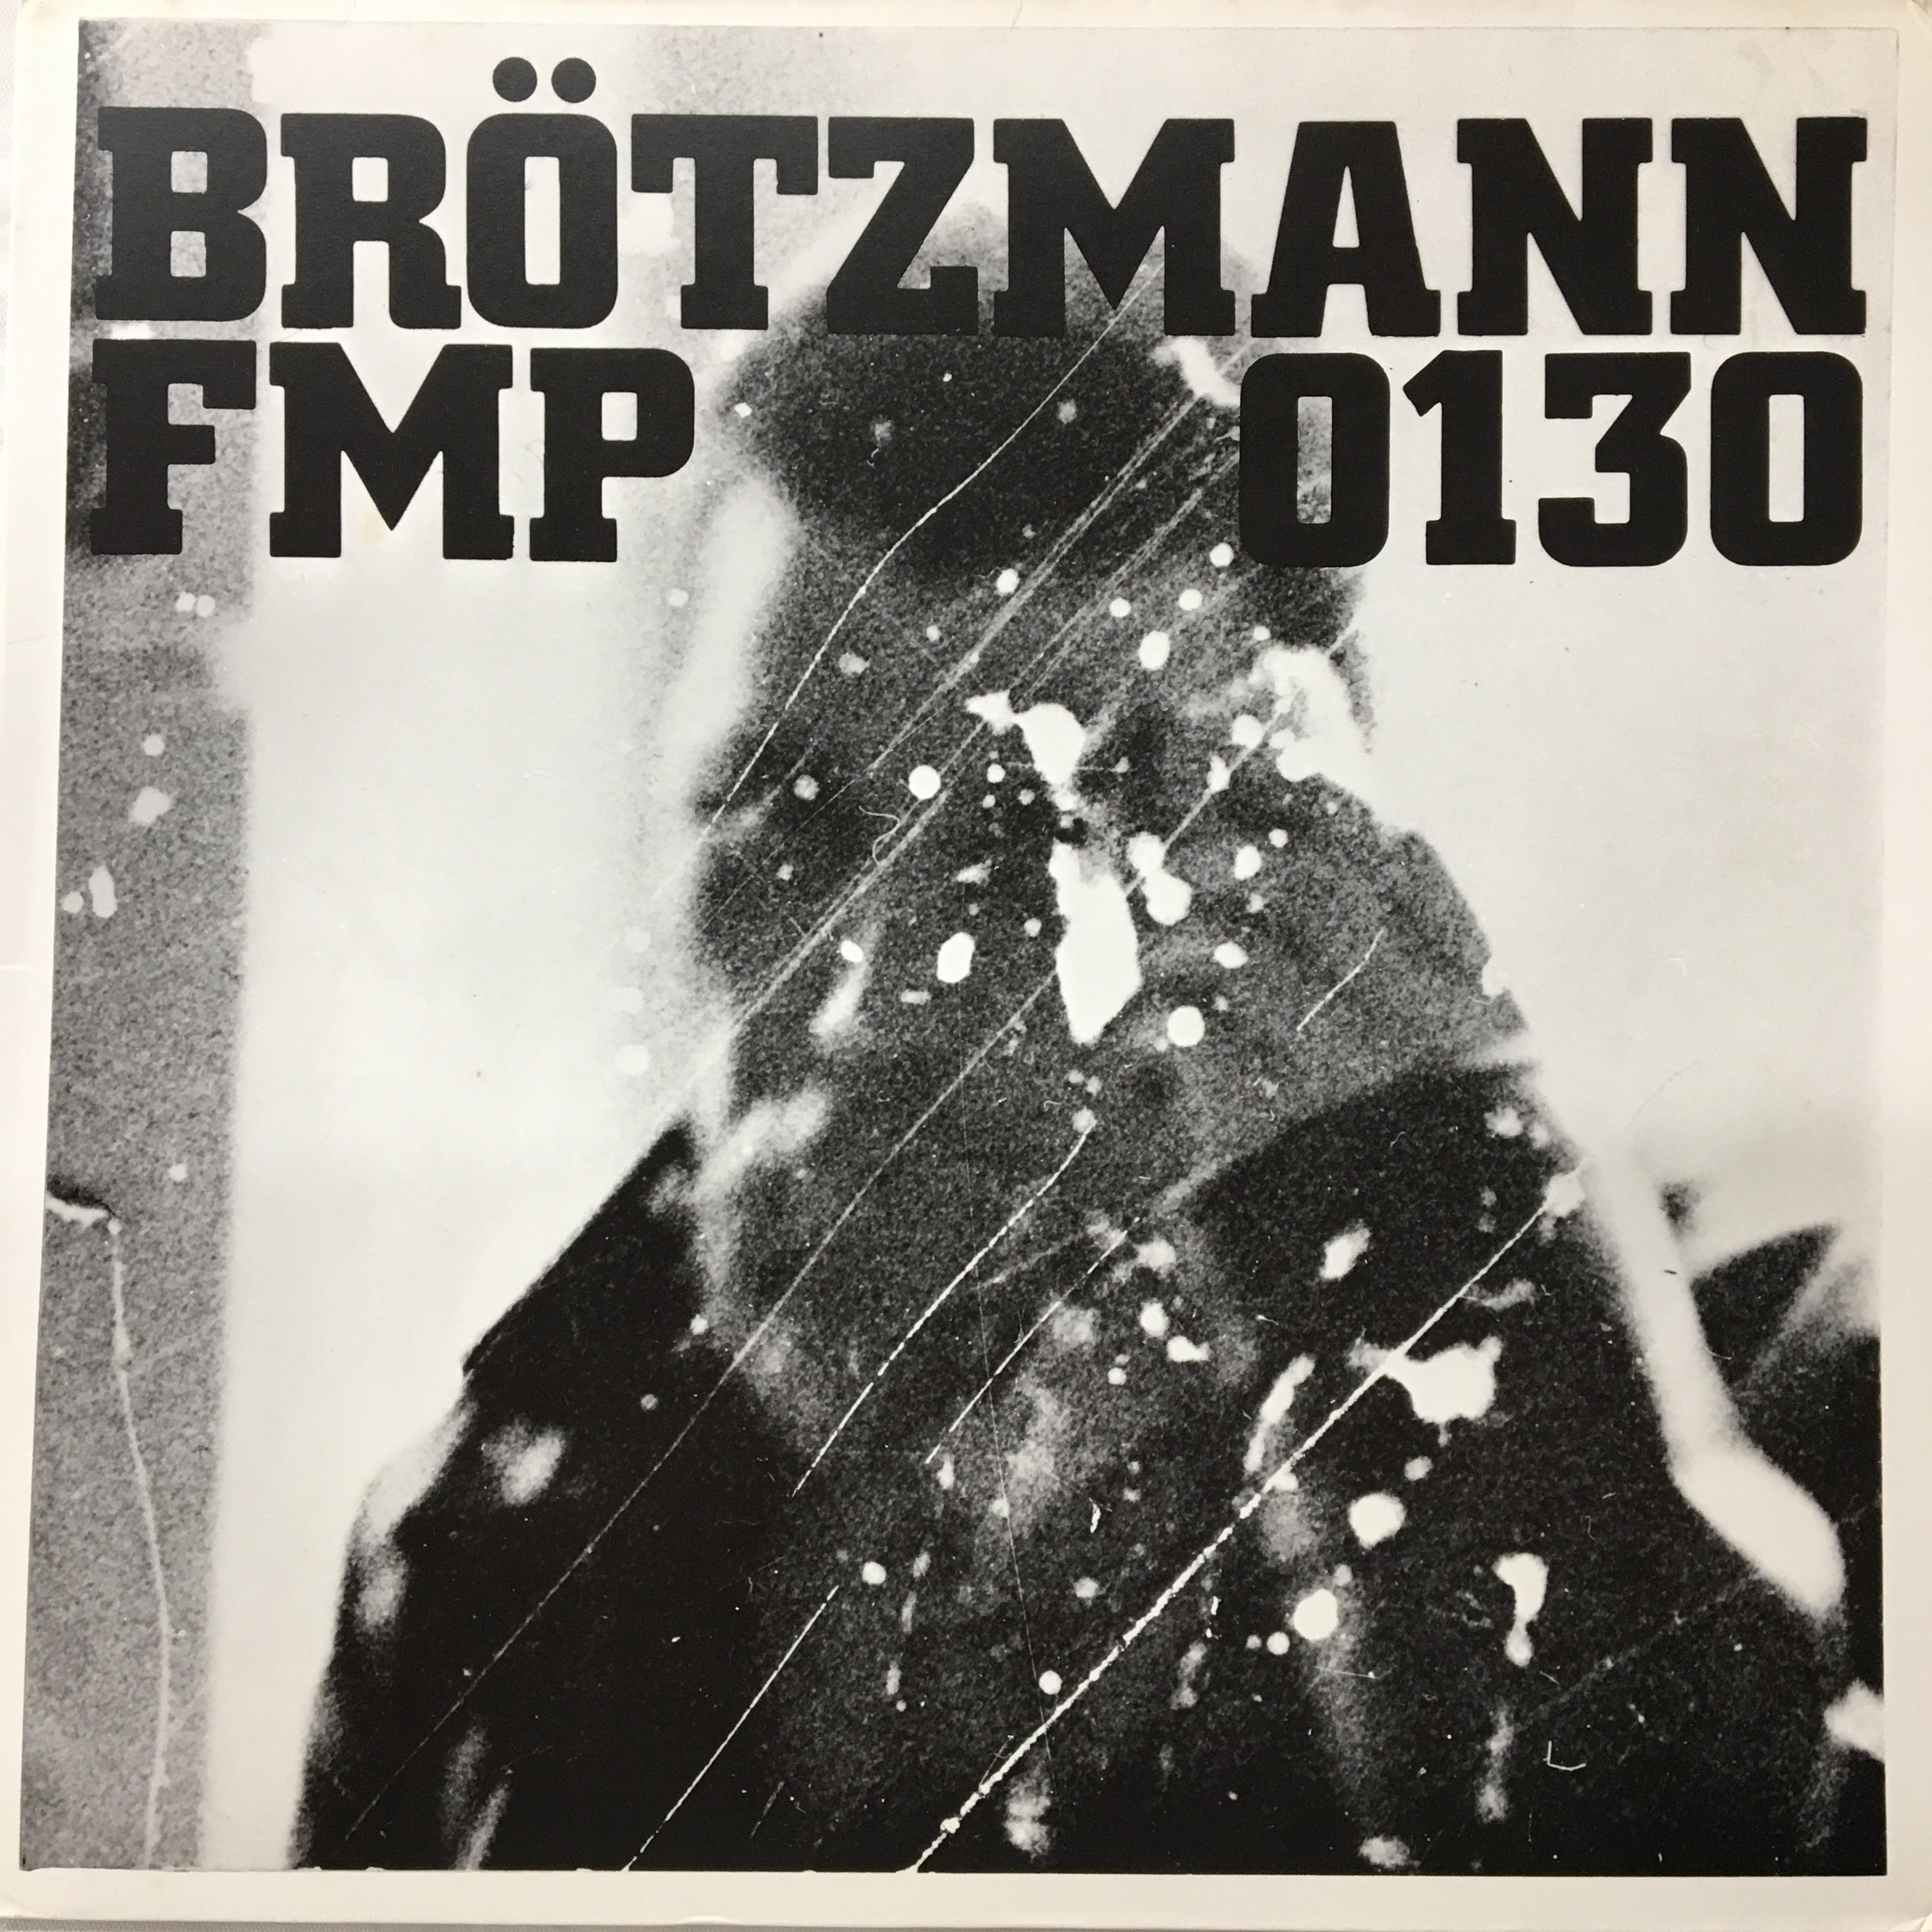 peter brotzmann machine gun download